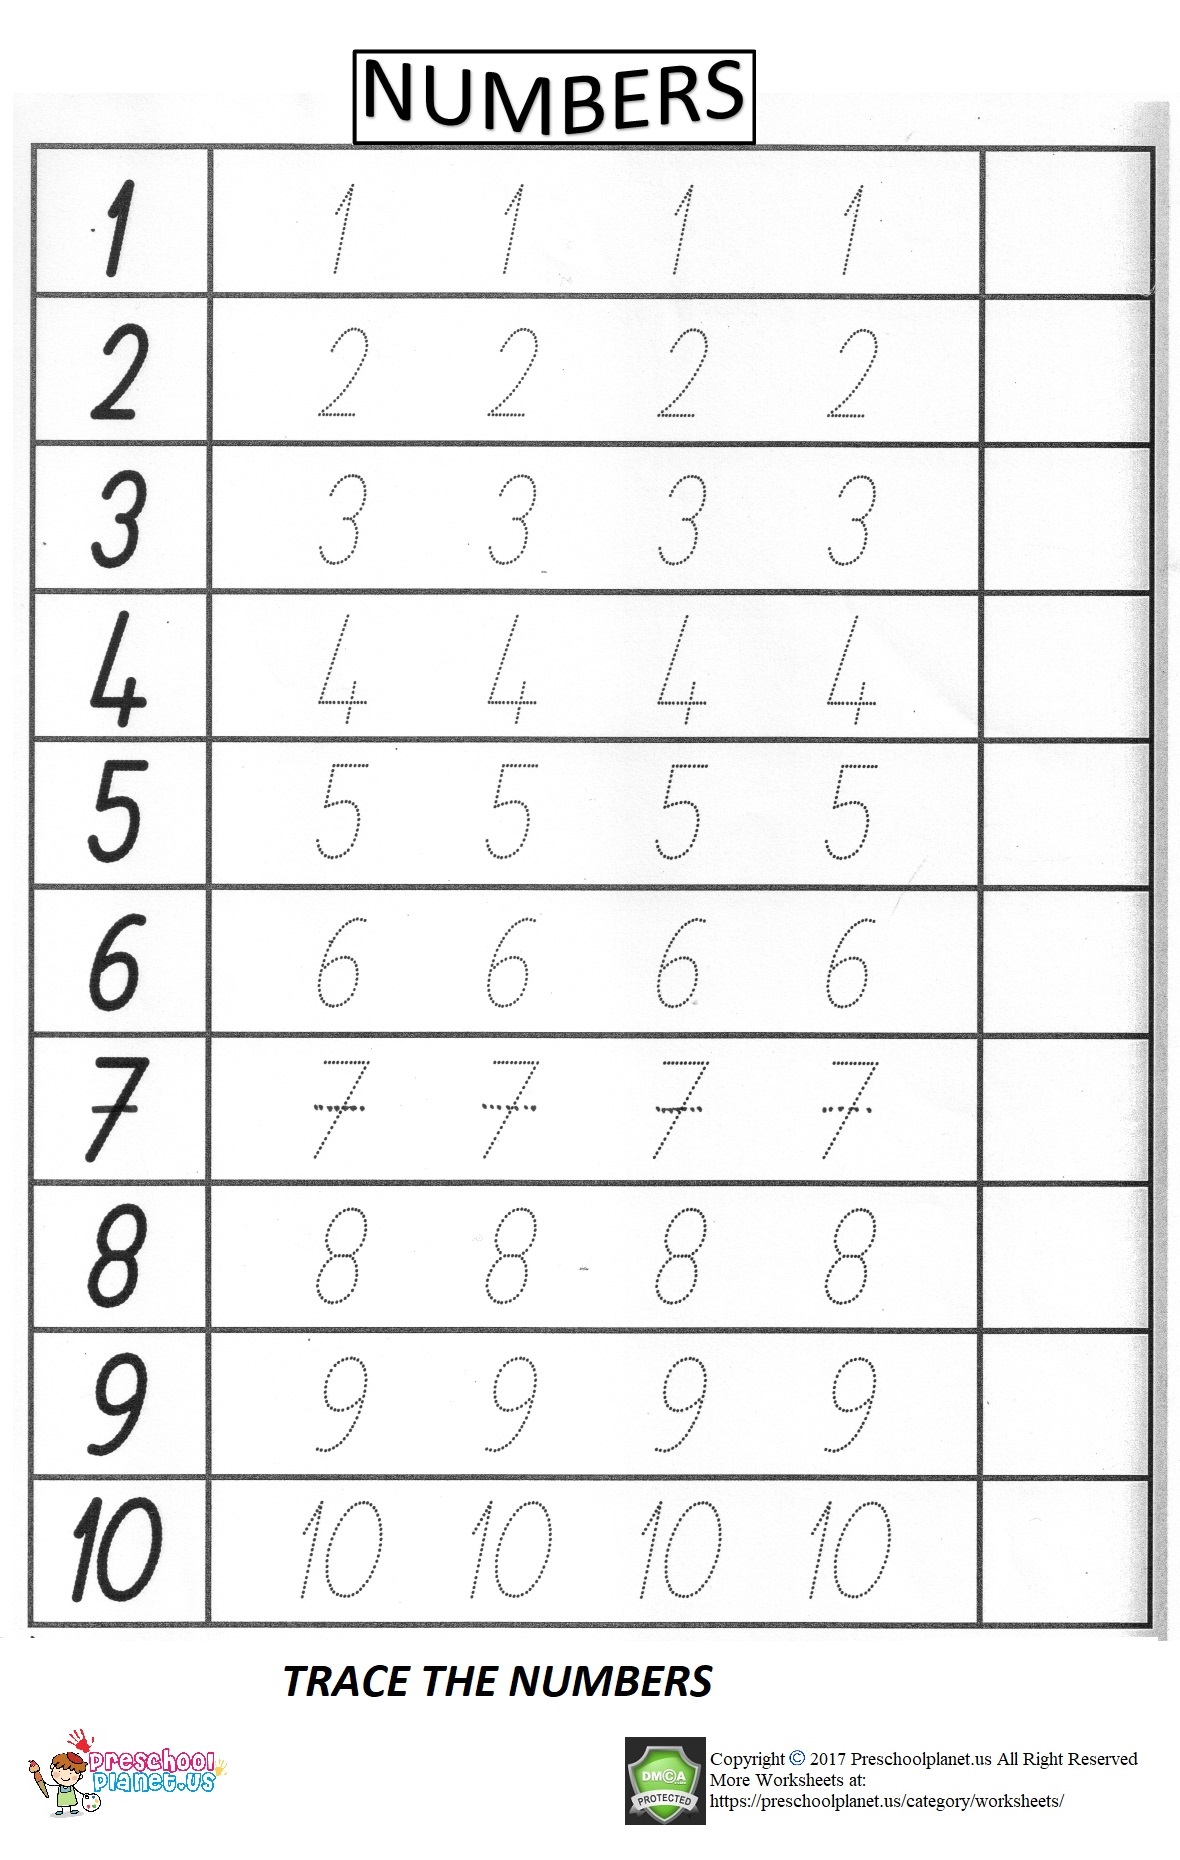 number-trace-worksheet-for-preschool-preschoolplanet